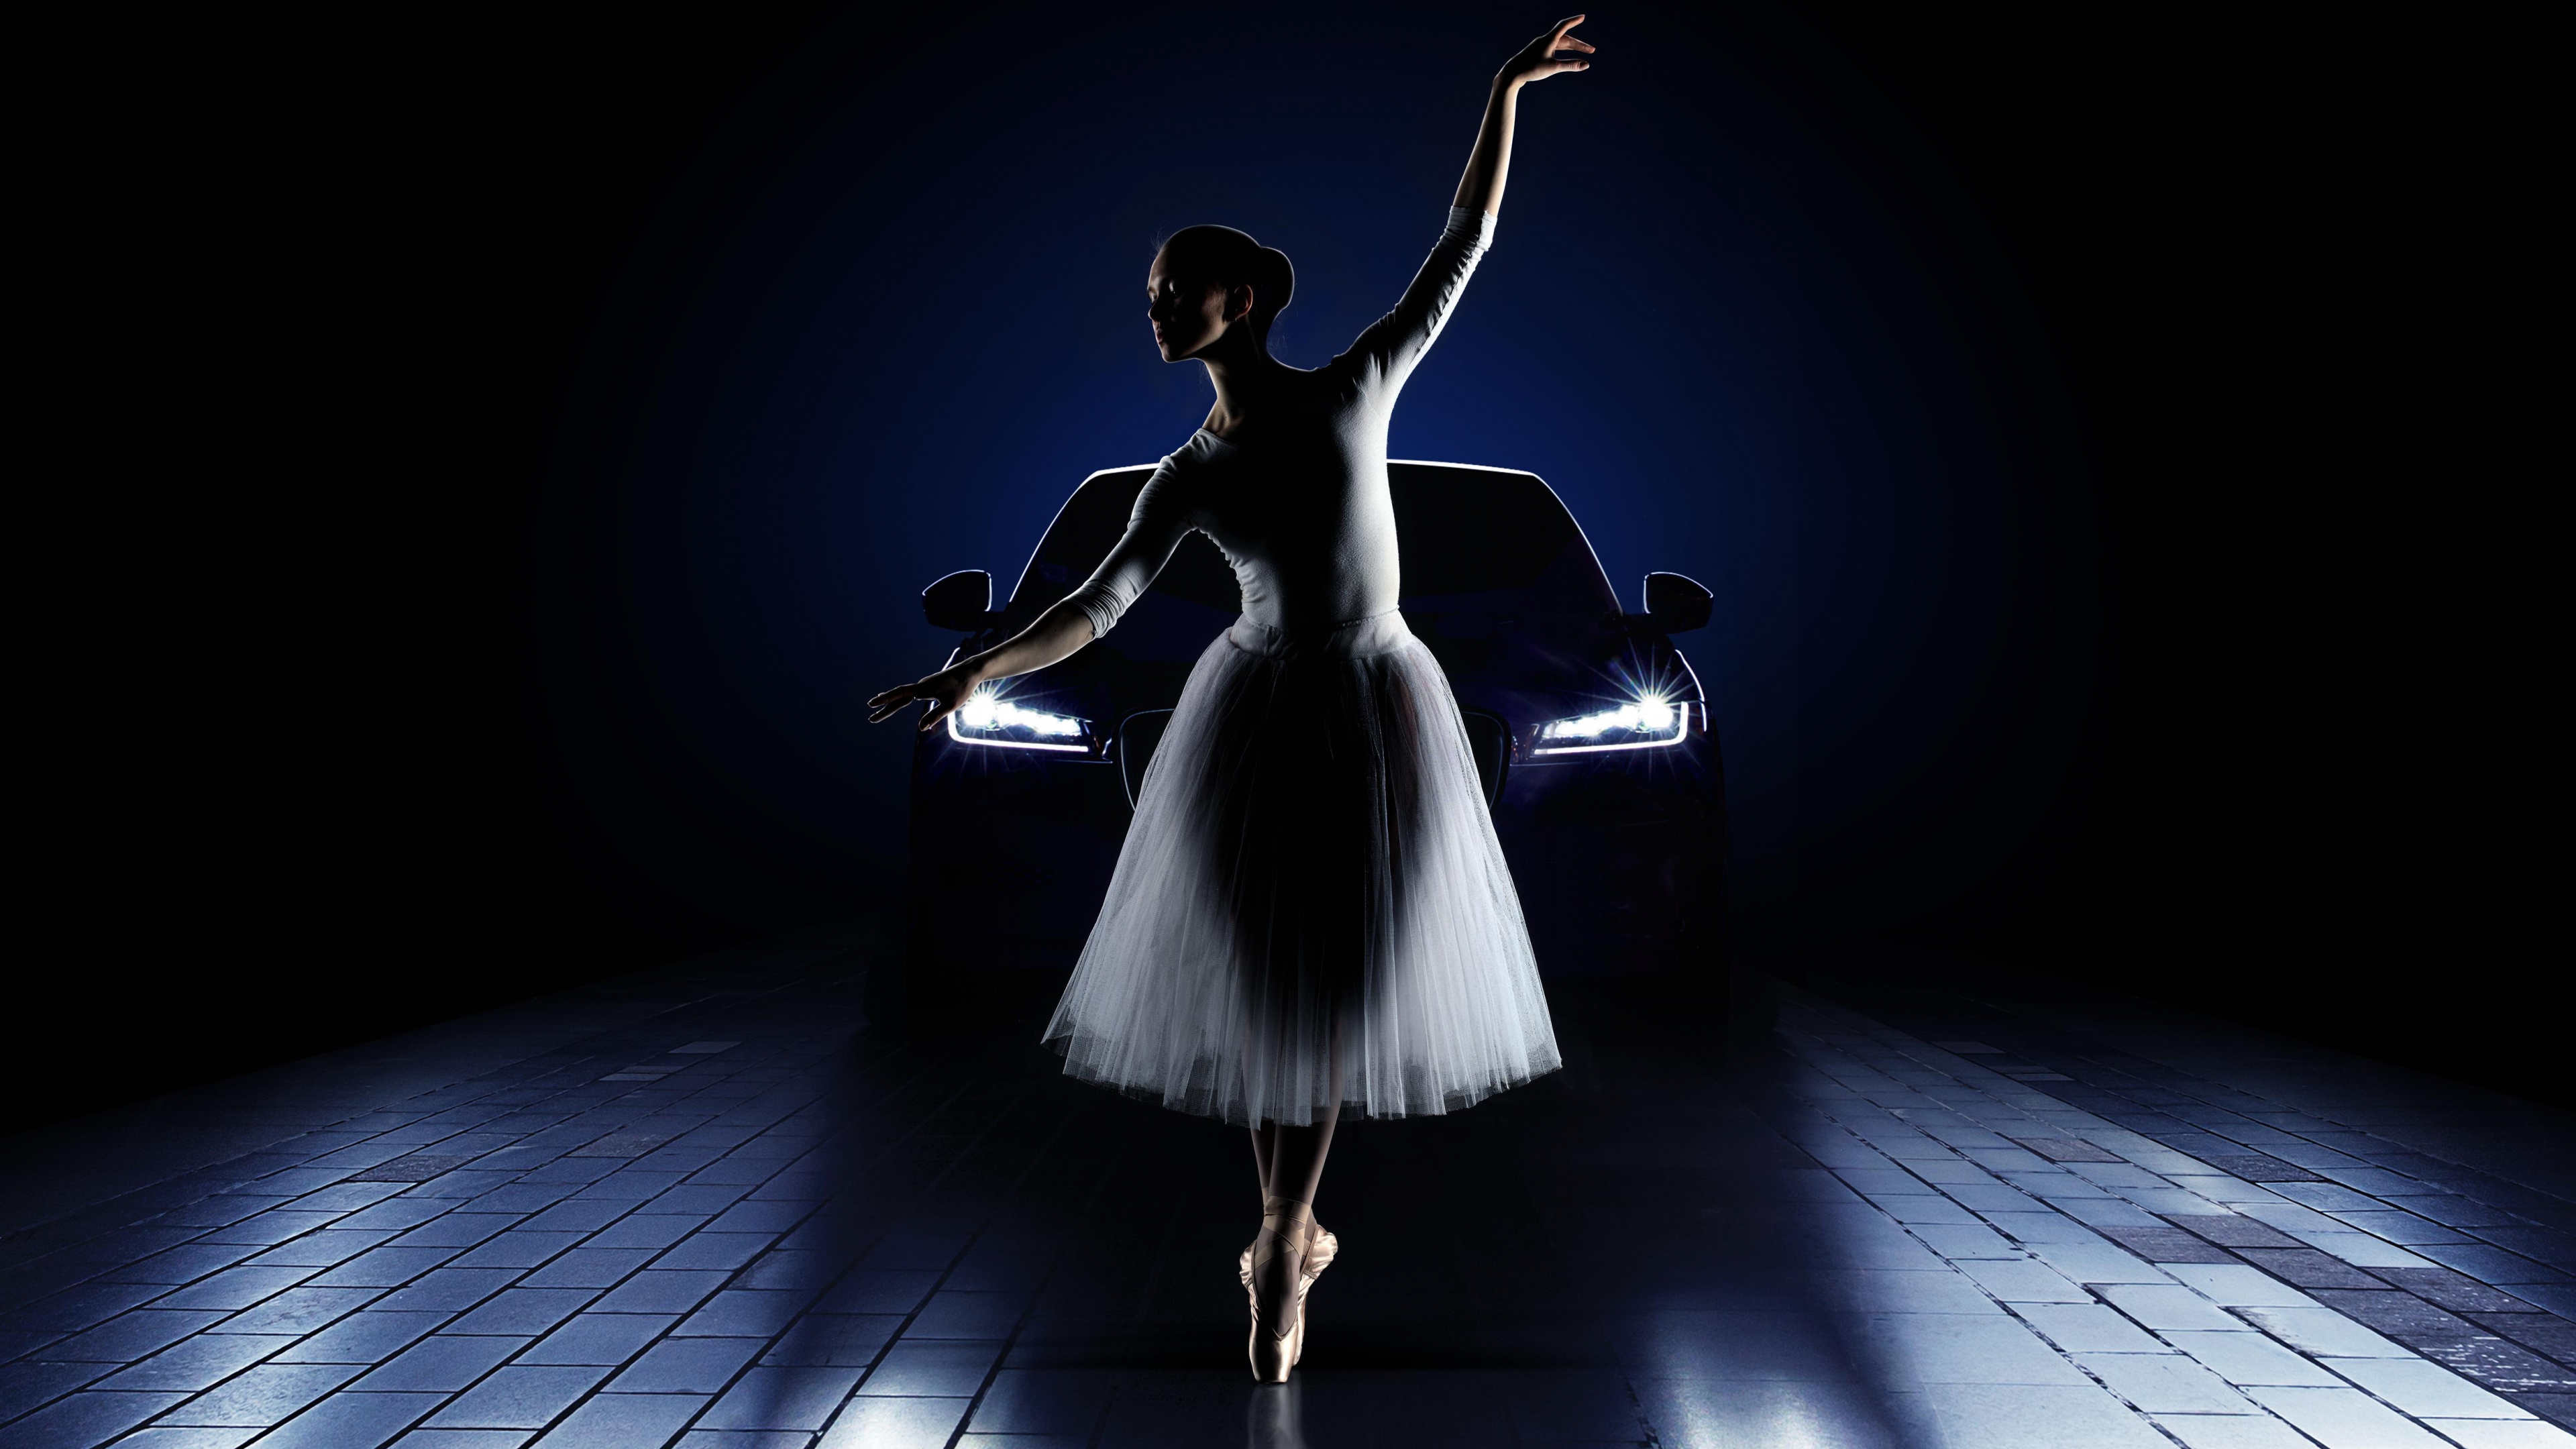 芭蕾舞团, 光, 舞蹈演员, 跳舞, 阶段 壁纸 3840x2160 允许